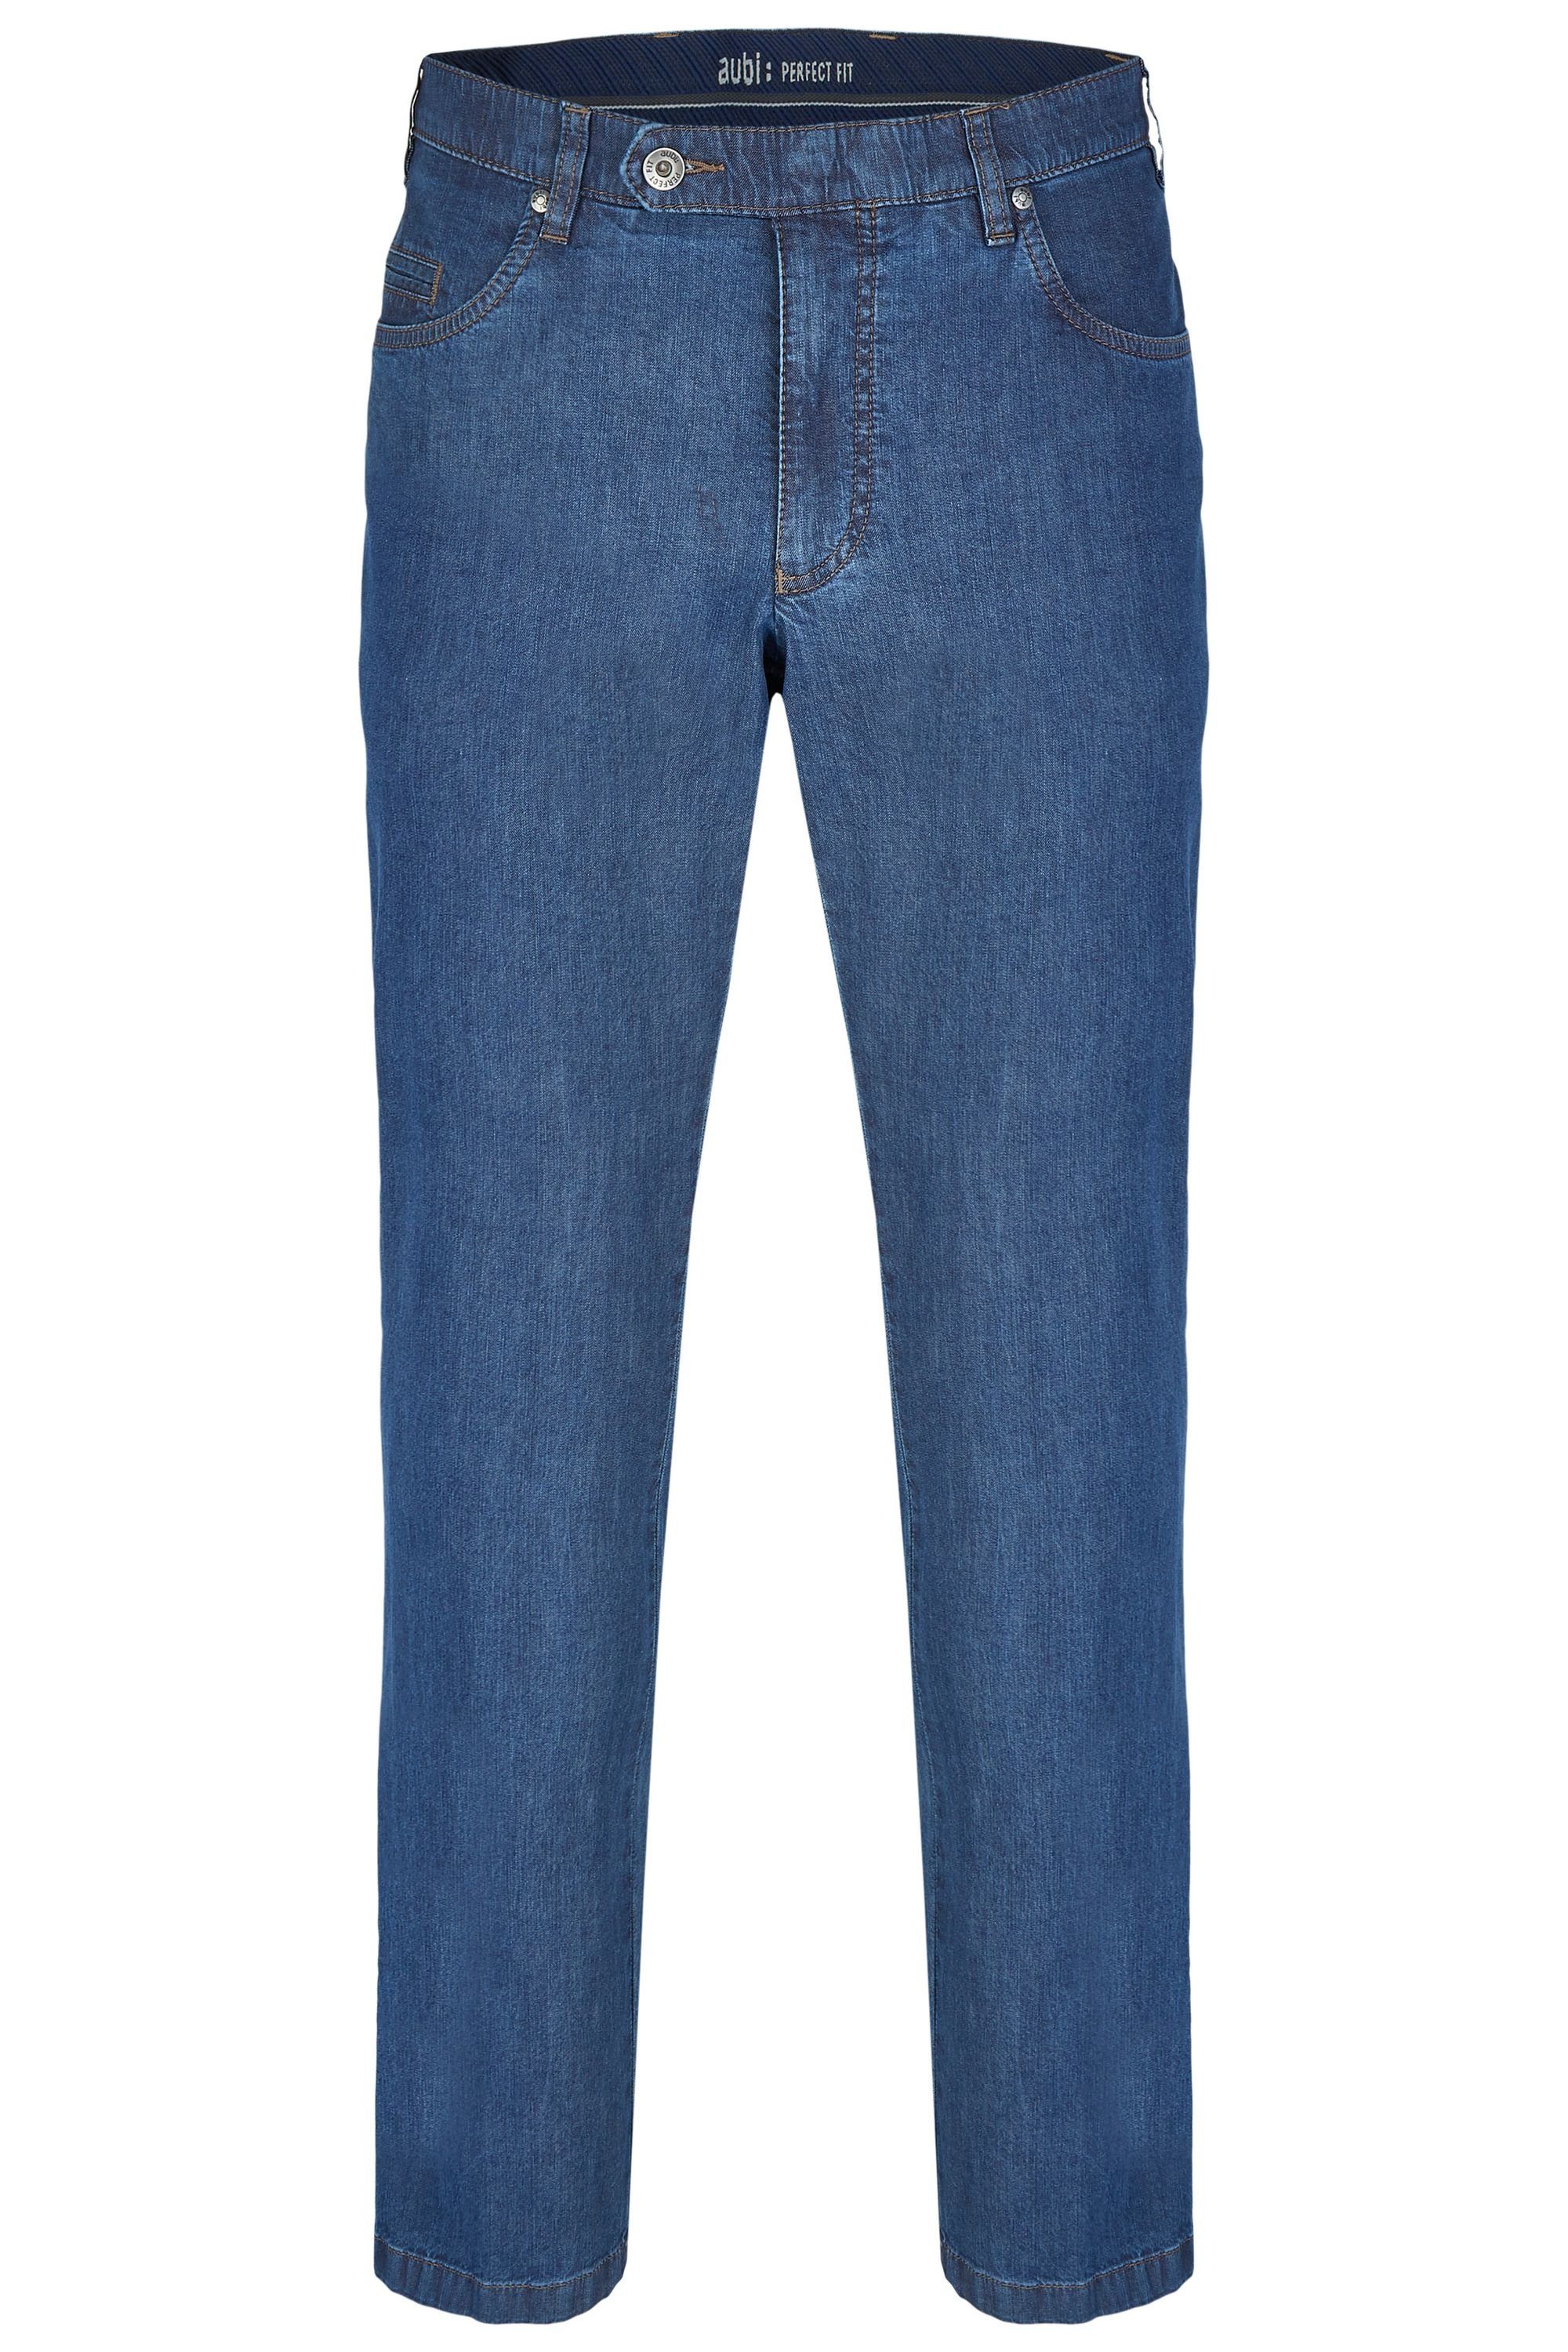 aubi: Bequeme Jeans aubi Perfect Fit Herren Sommer Jeans Hose Stretch aus Baumwolle High Flex Modell 577 stone (46)